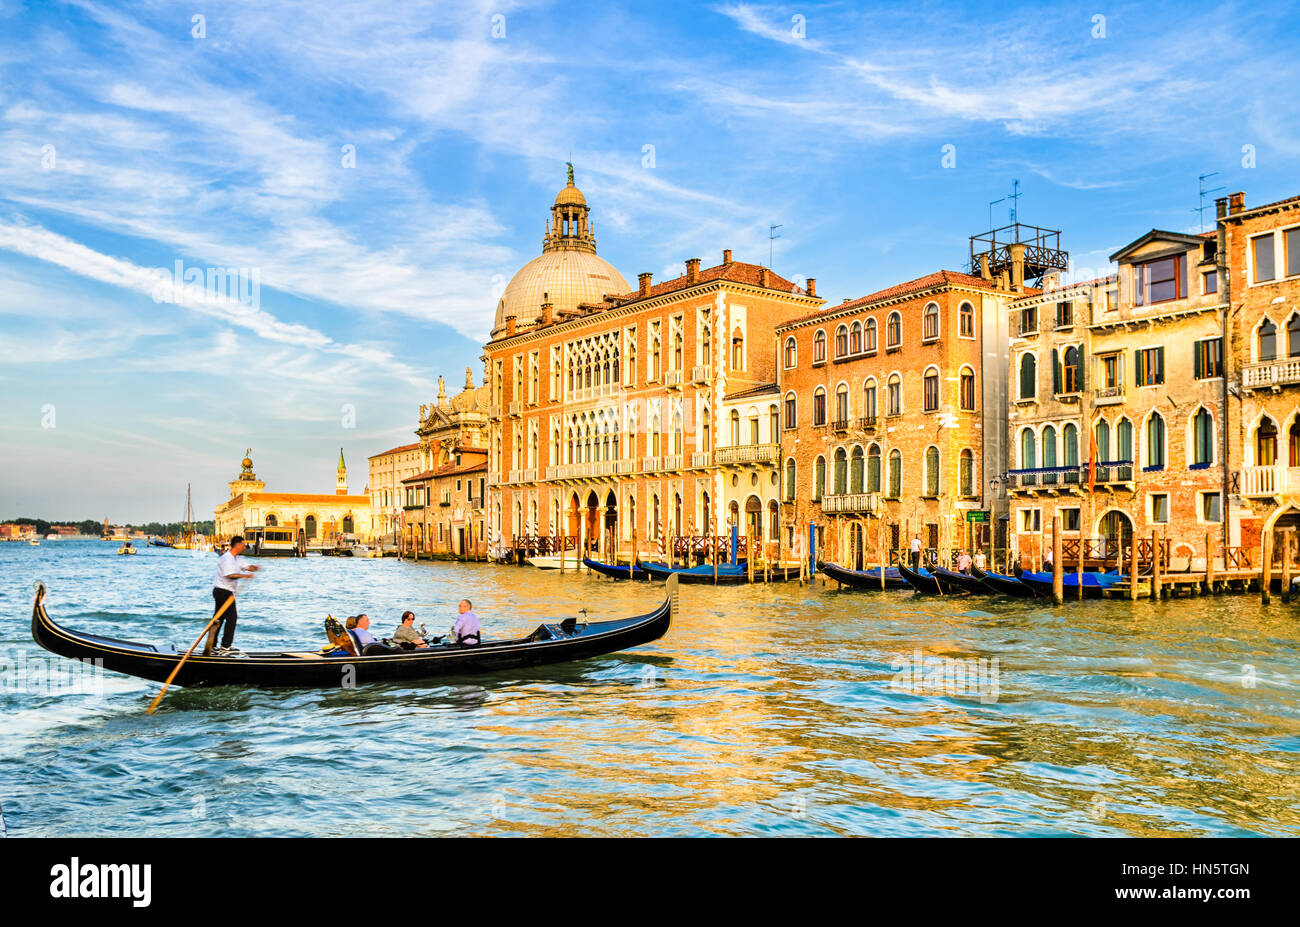 Gondola on the Grand Canal in front of the Basilica Santa Maria della Salute, Venice Stock Photo